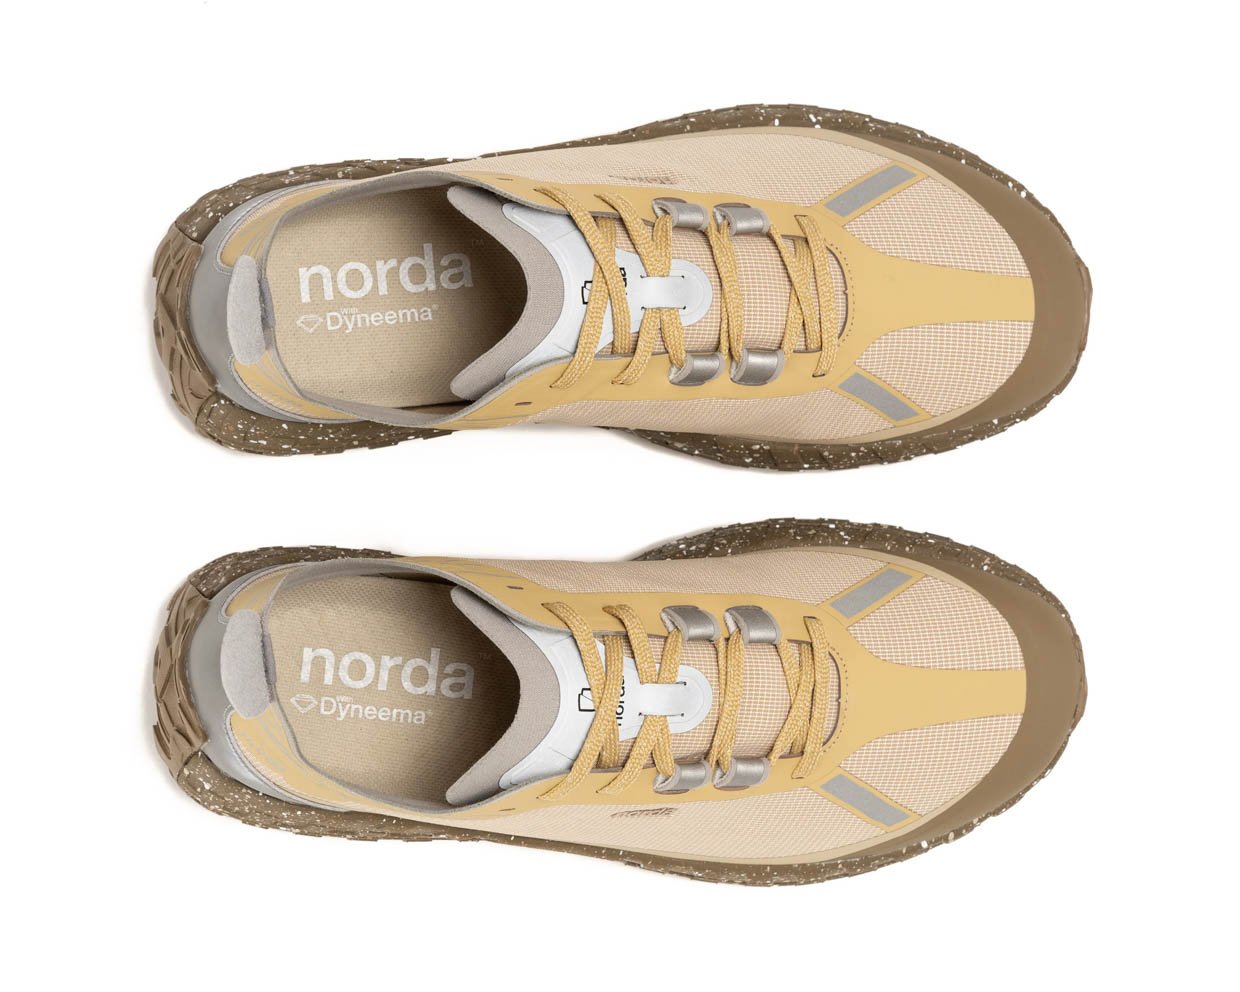 Norda 001 Regolith Running Shoes